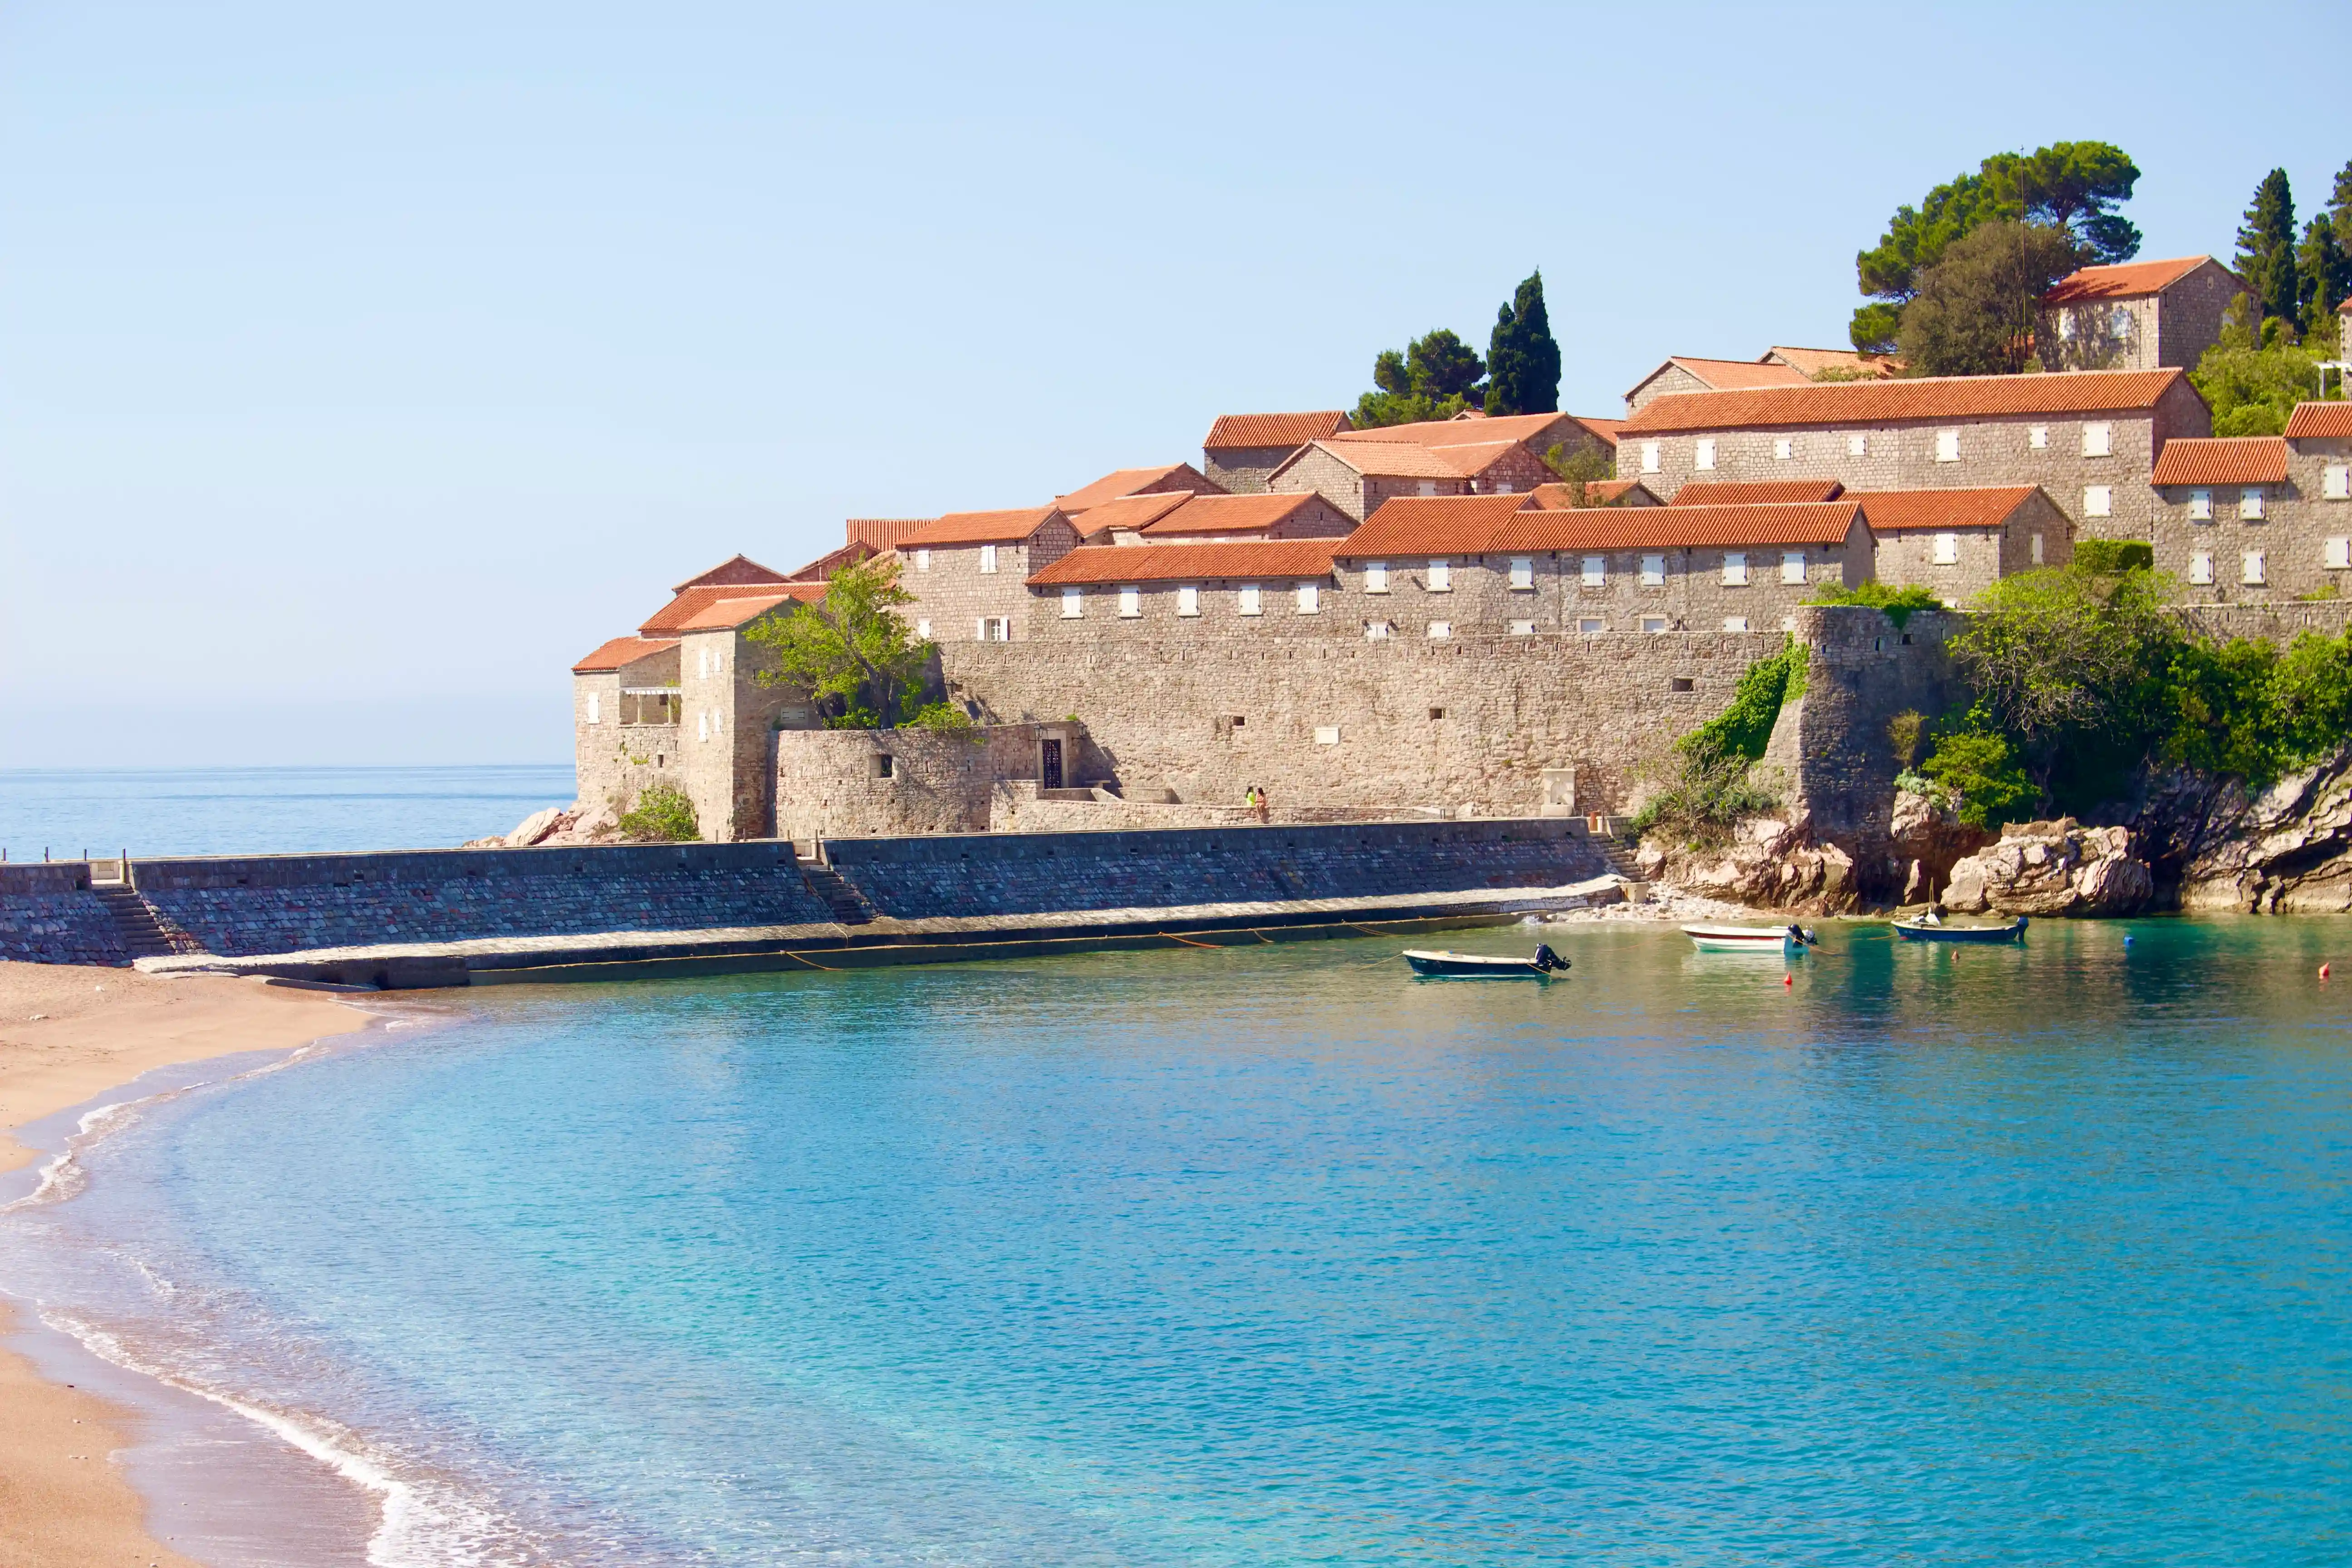 Imagine Is Kotor Montenegro worth it? in Kotor